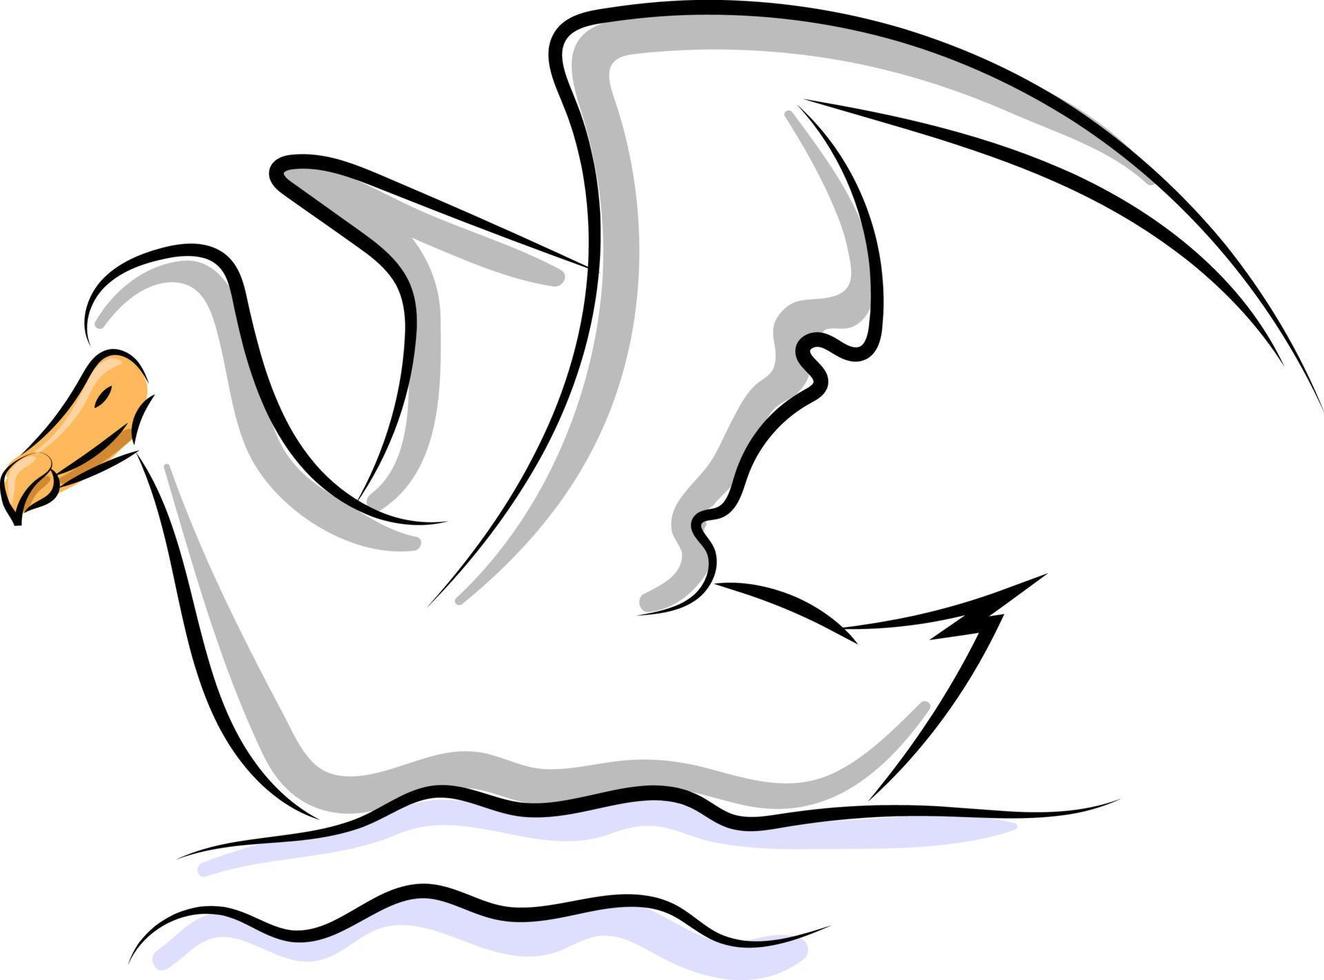 fågel i vatten, illustration, vektor på vit bakgrund.